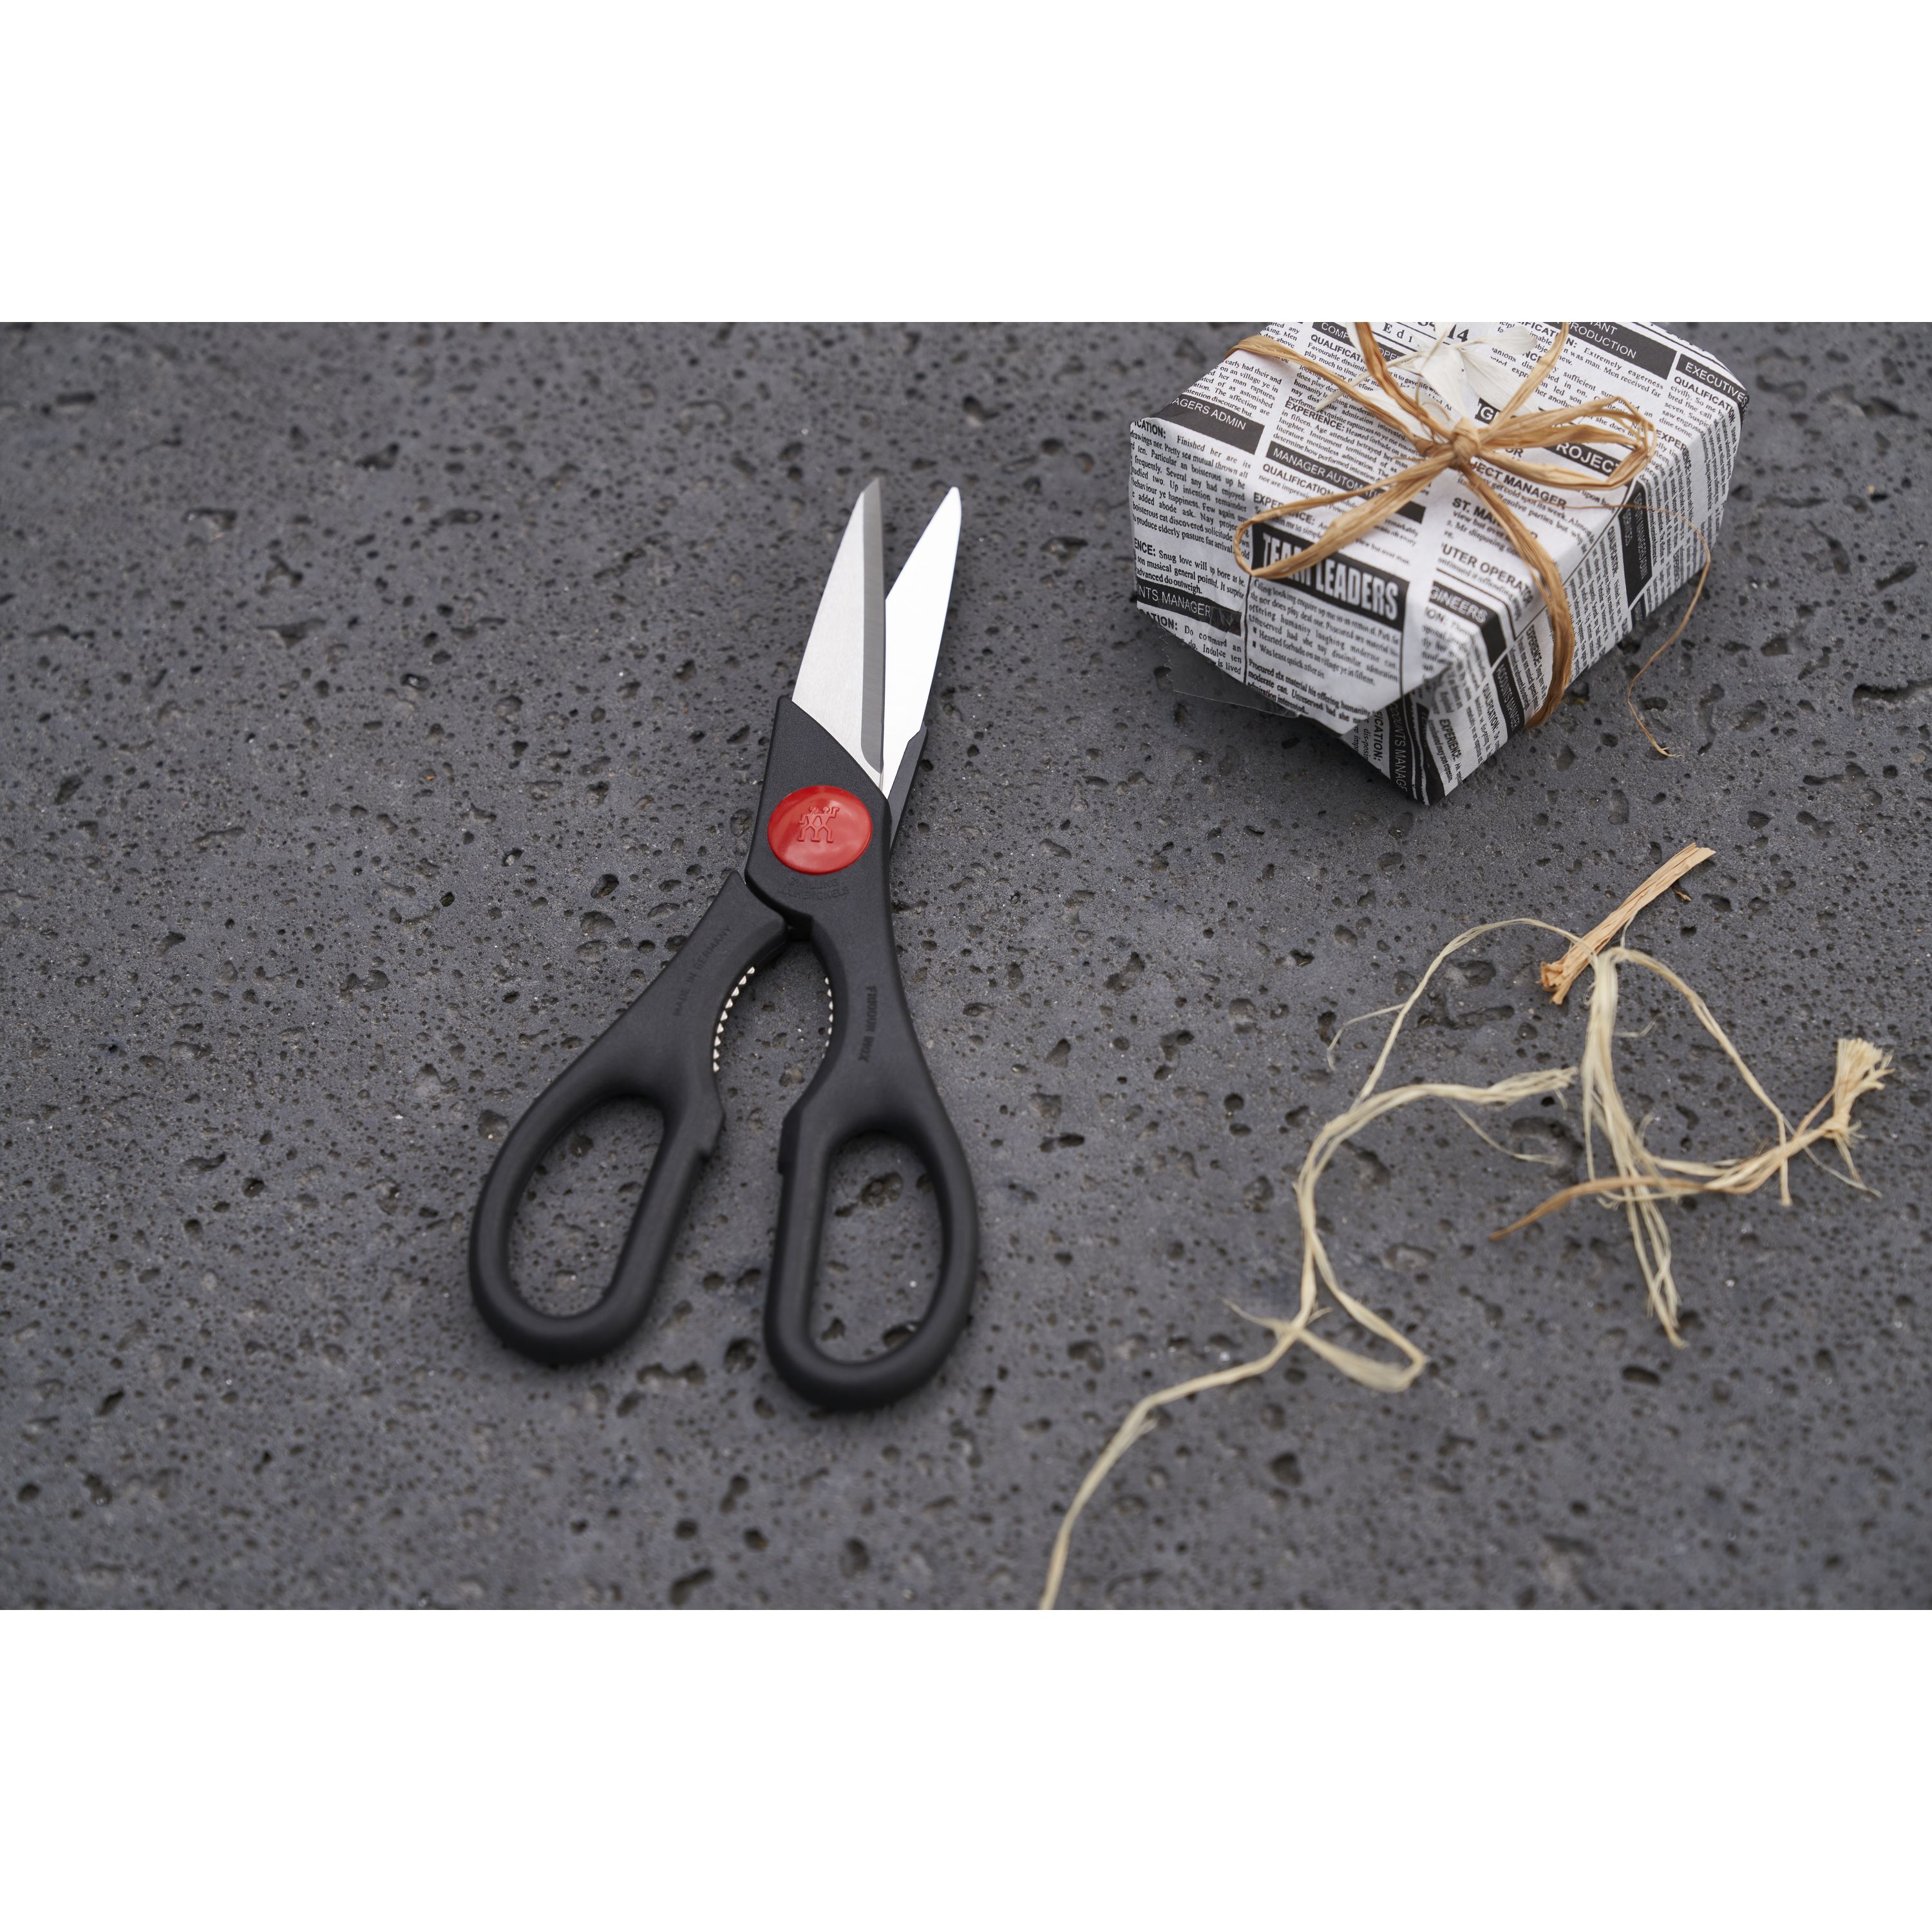 ZWILLING Shears & Scissors TWIN Kitchen Shears - Black